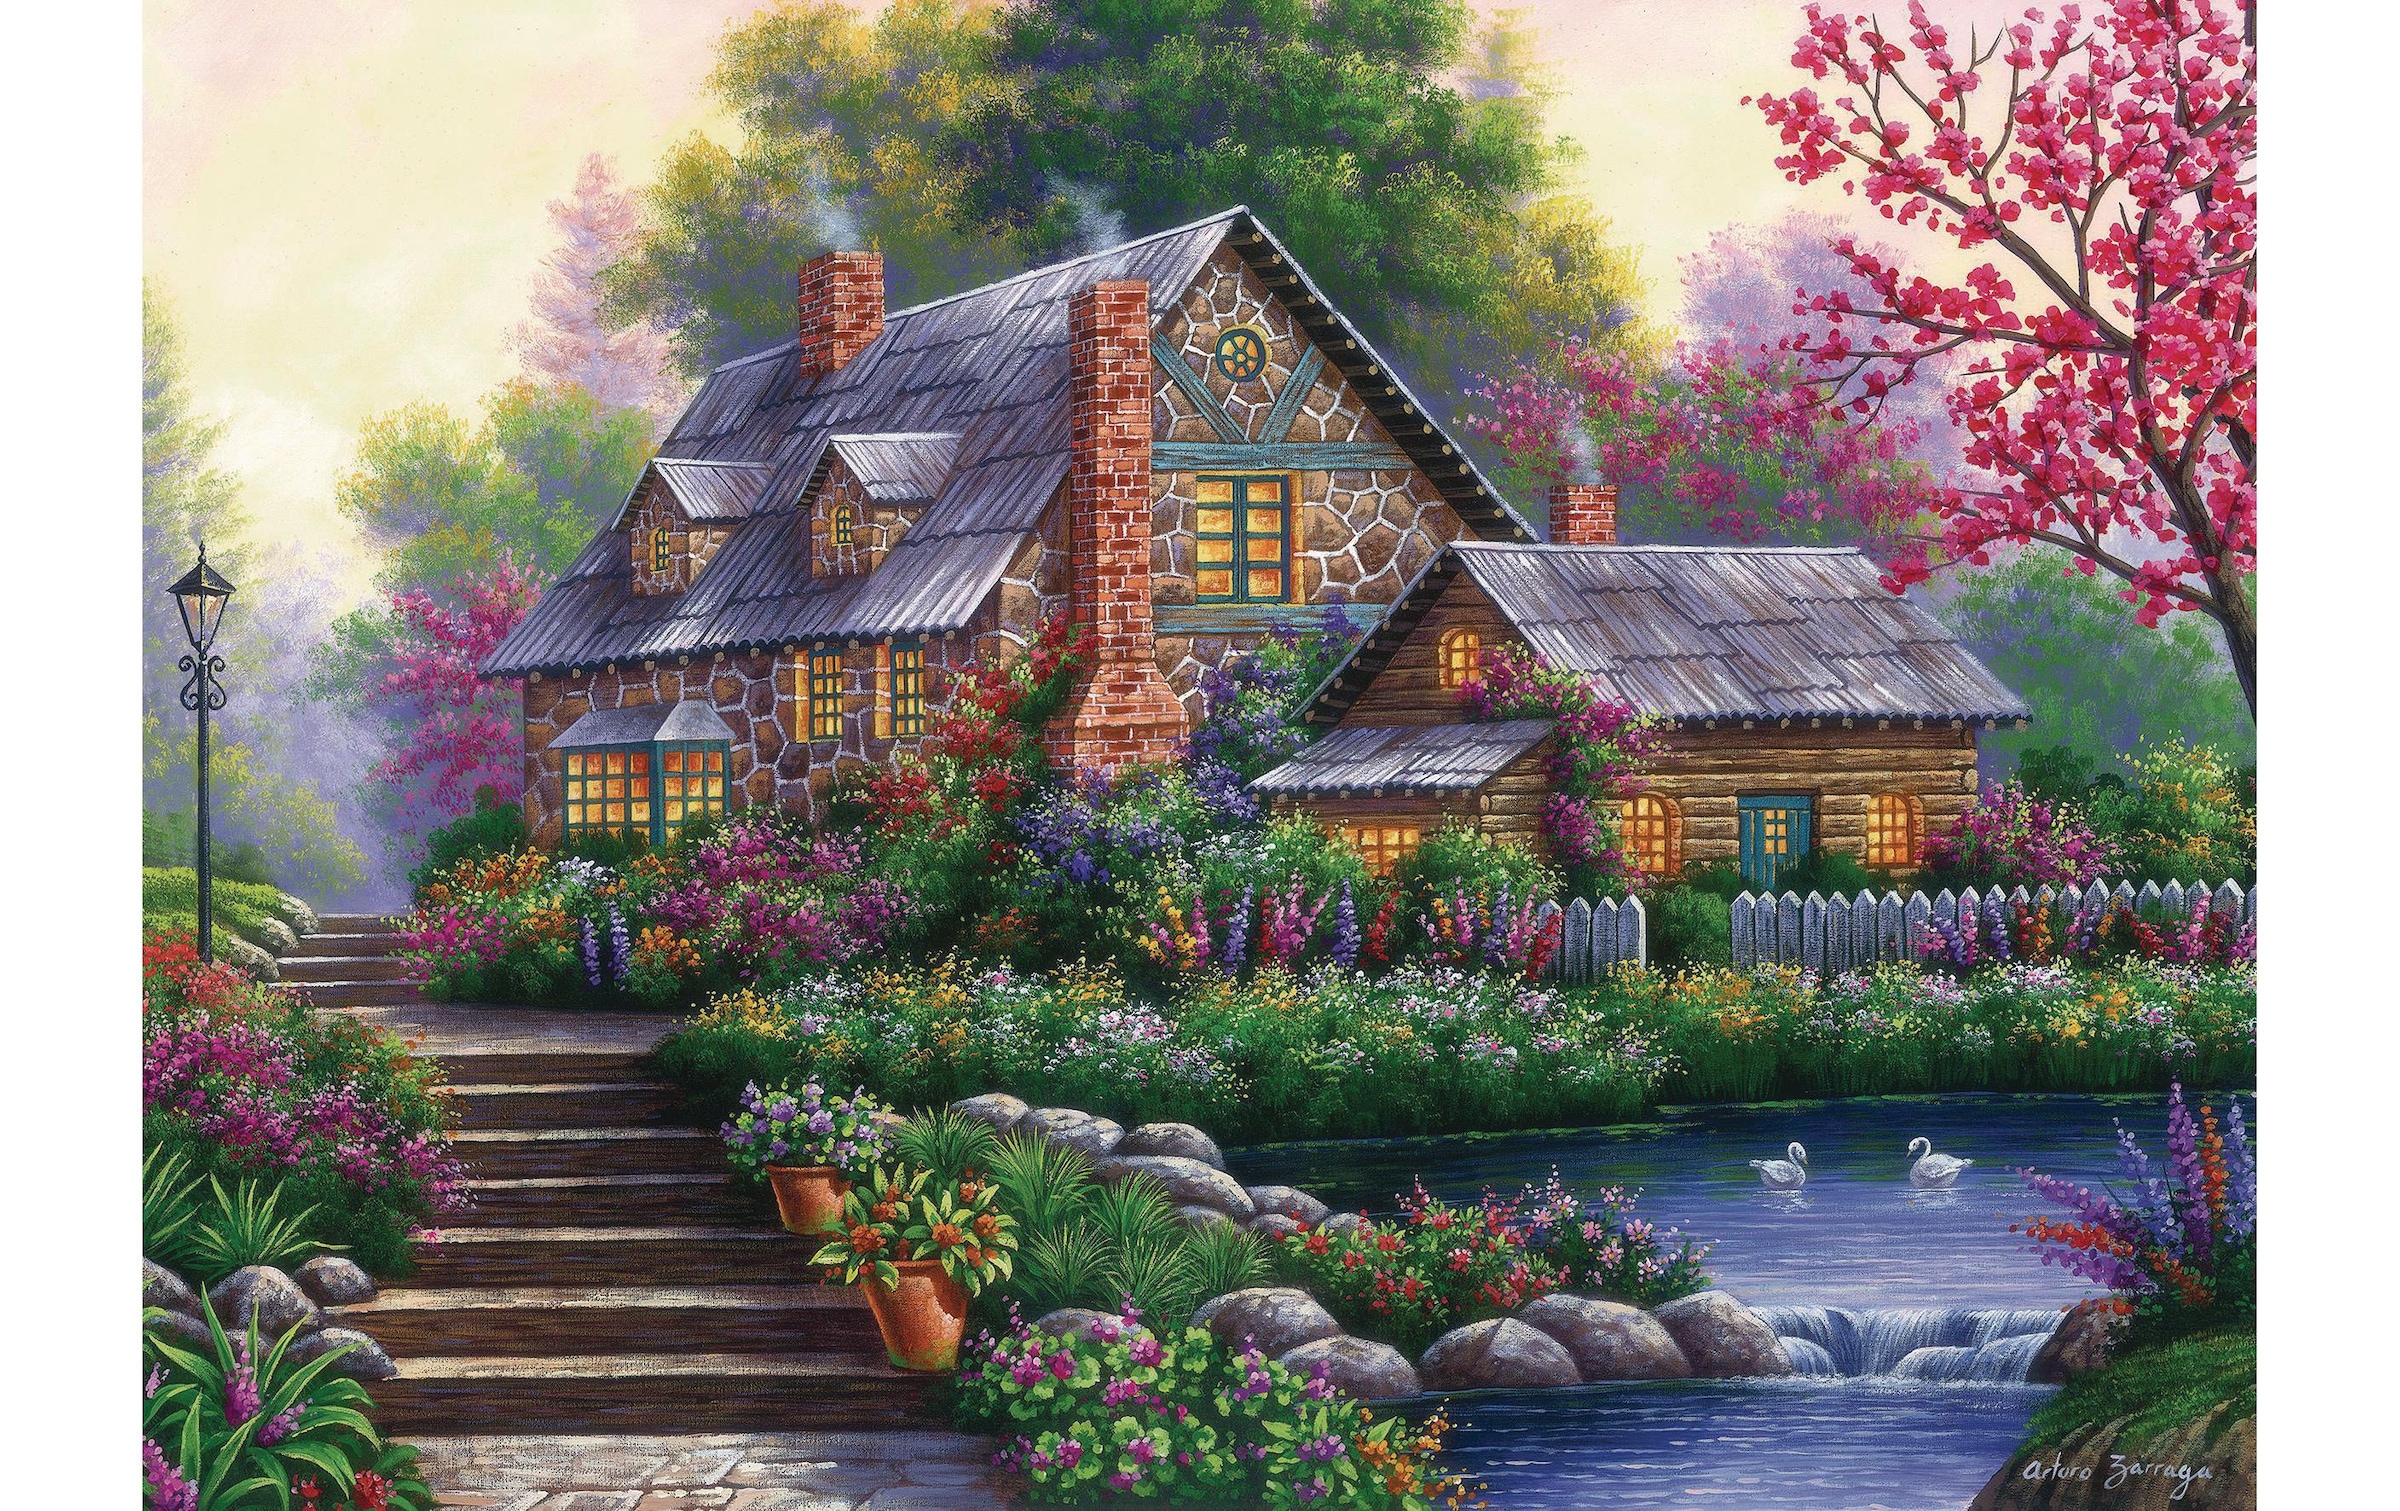 Ravensburger Puzzle »Romantisches Cottage«